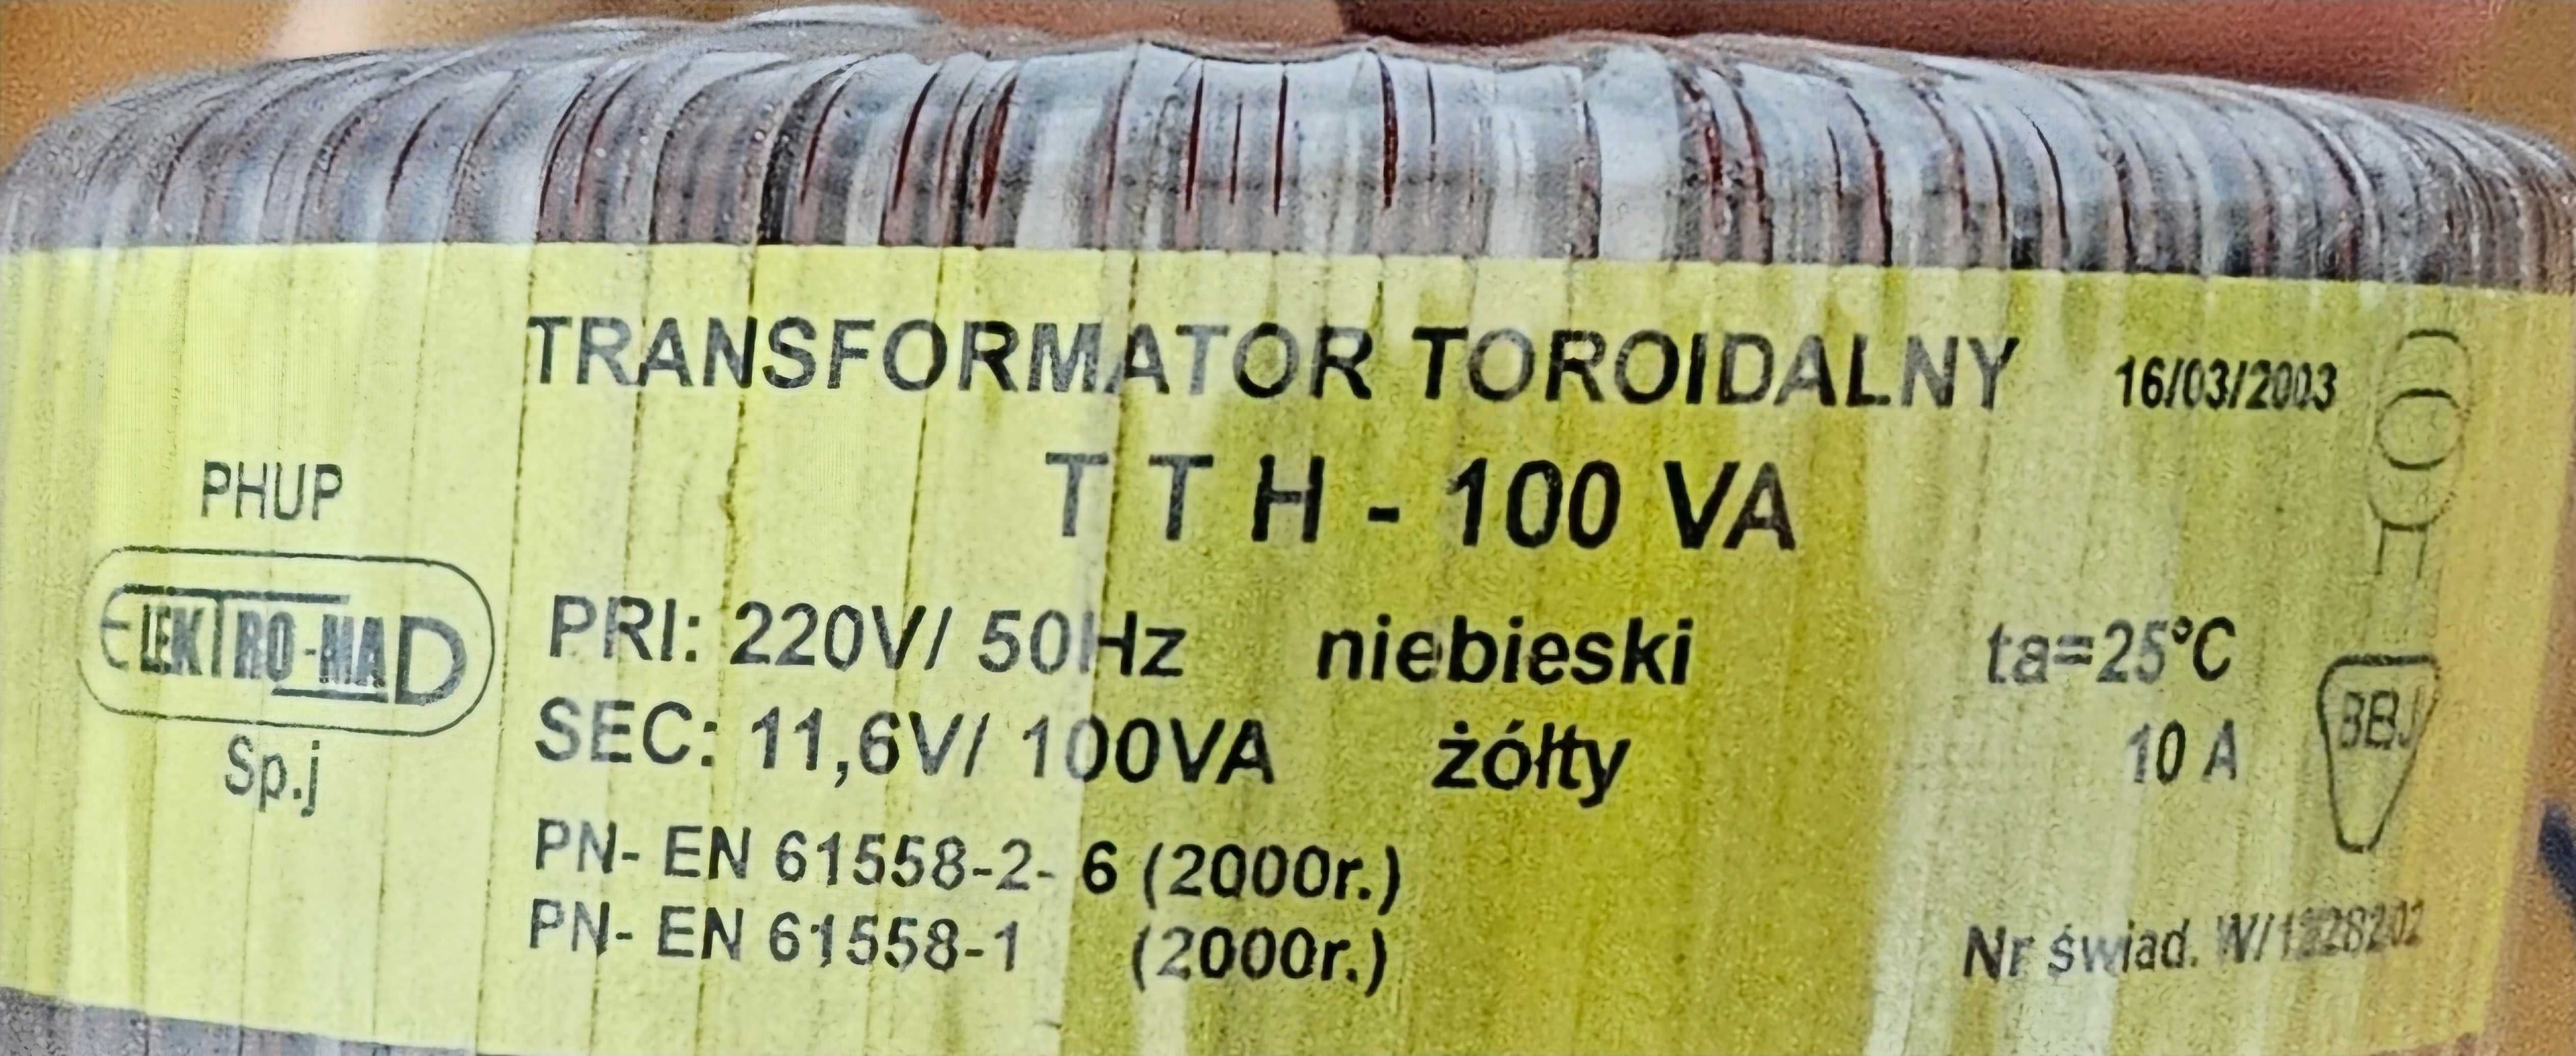 Transformator toroidalny 100VA 12V